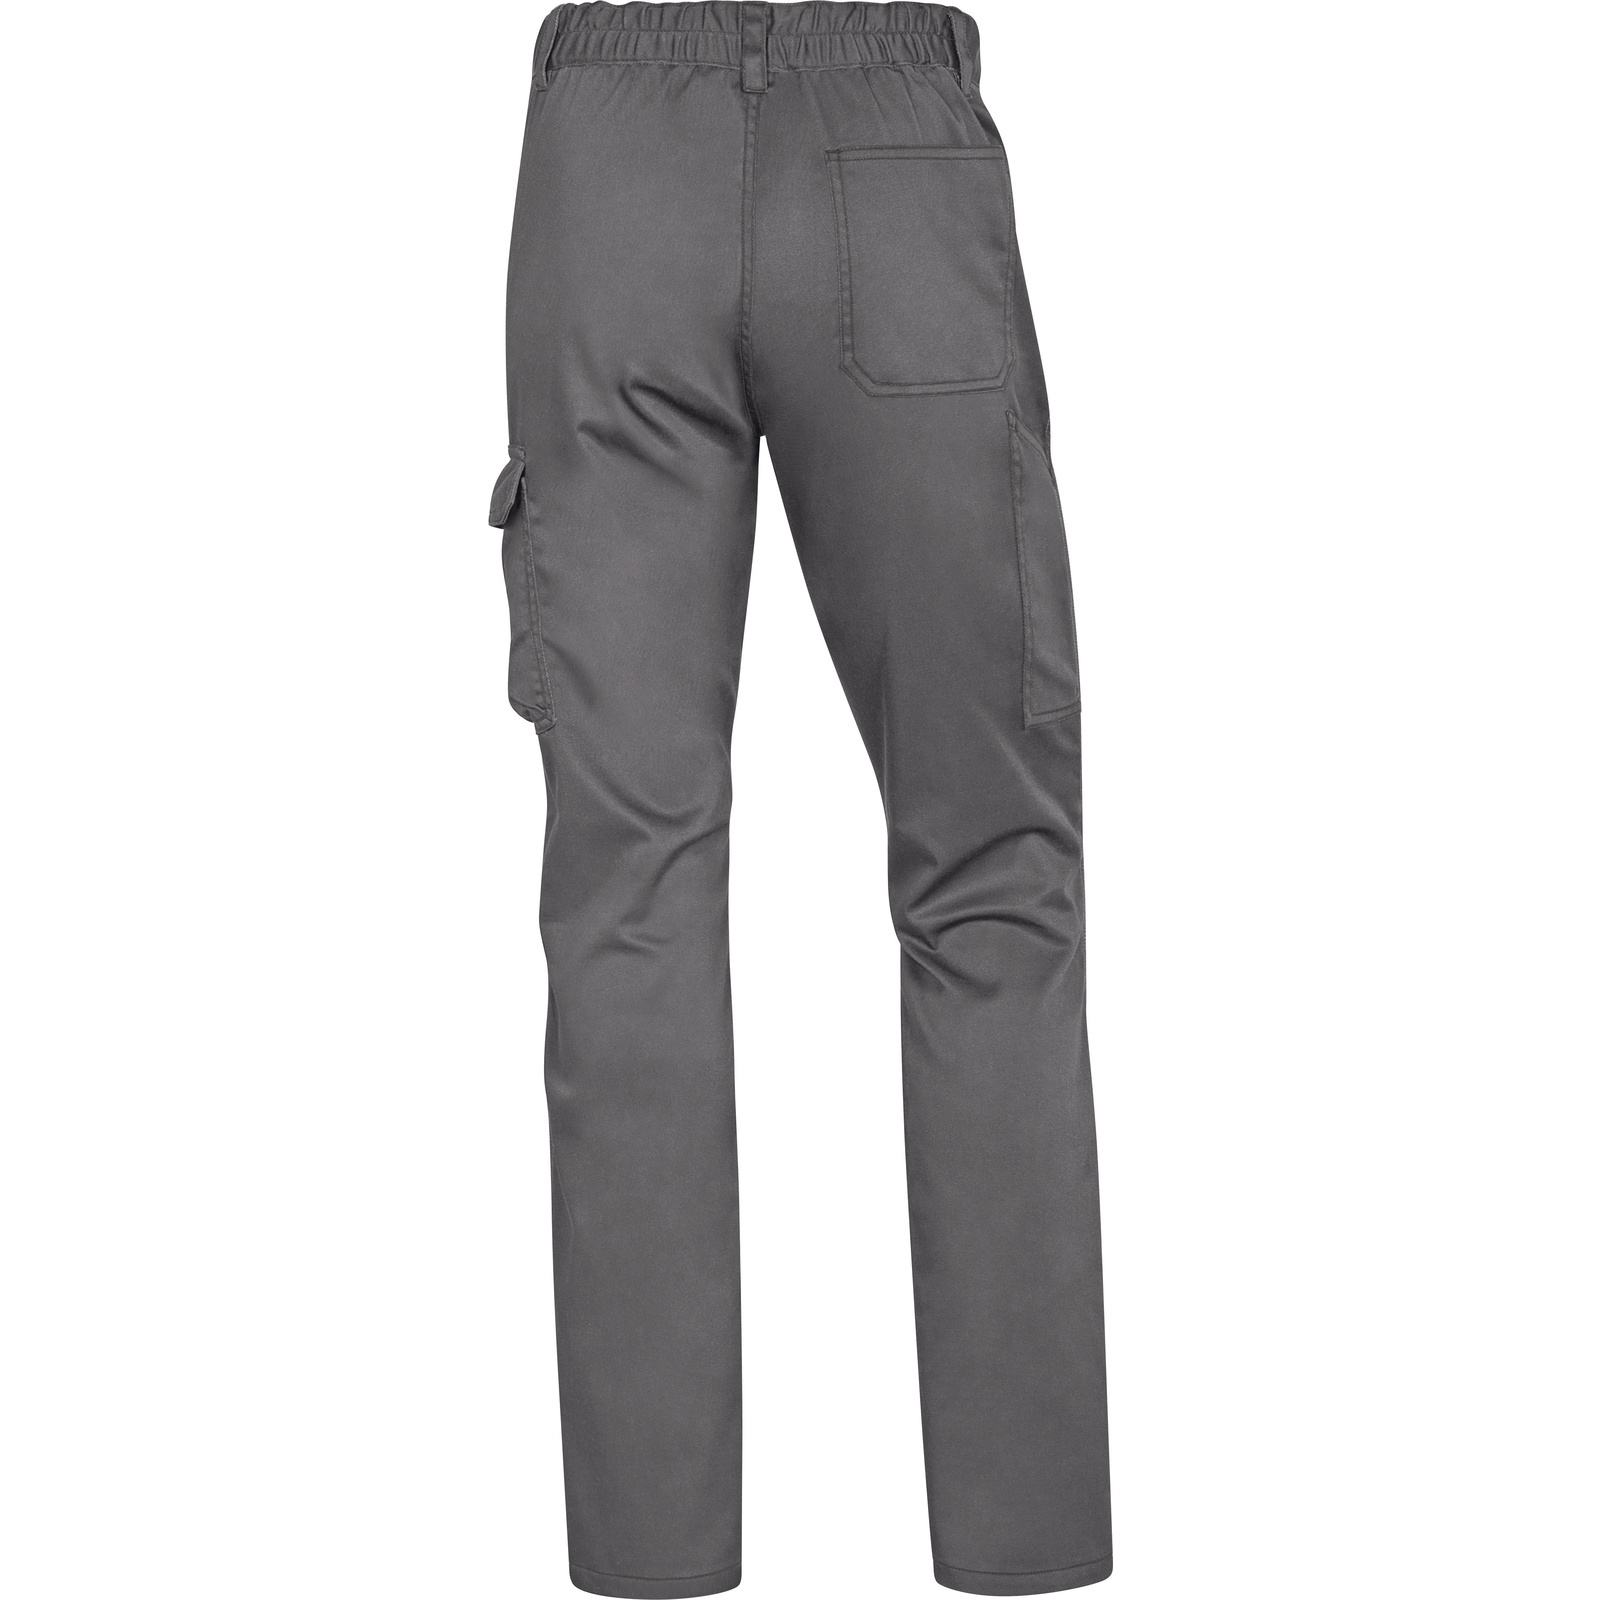 Pantalon de travail panostyle polyester/coton/elasthanne DELTA PLUS - D020PANOSTRPAMOT0